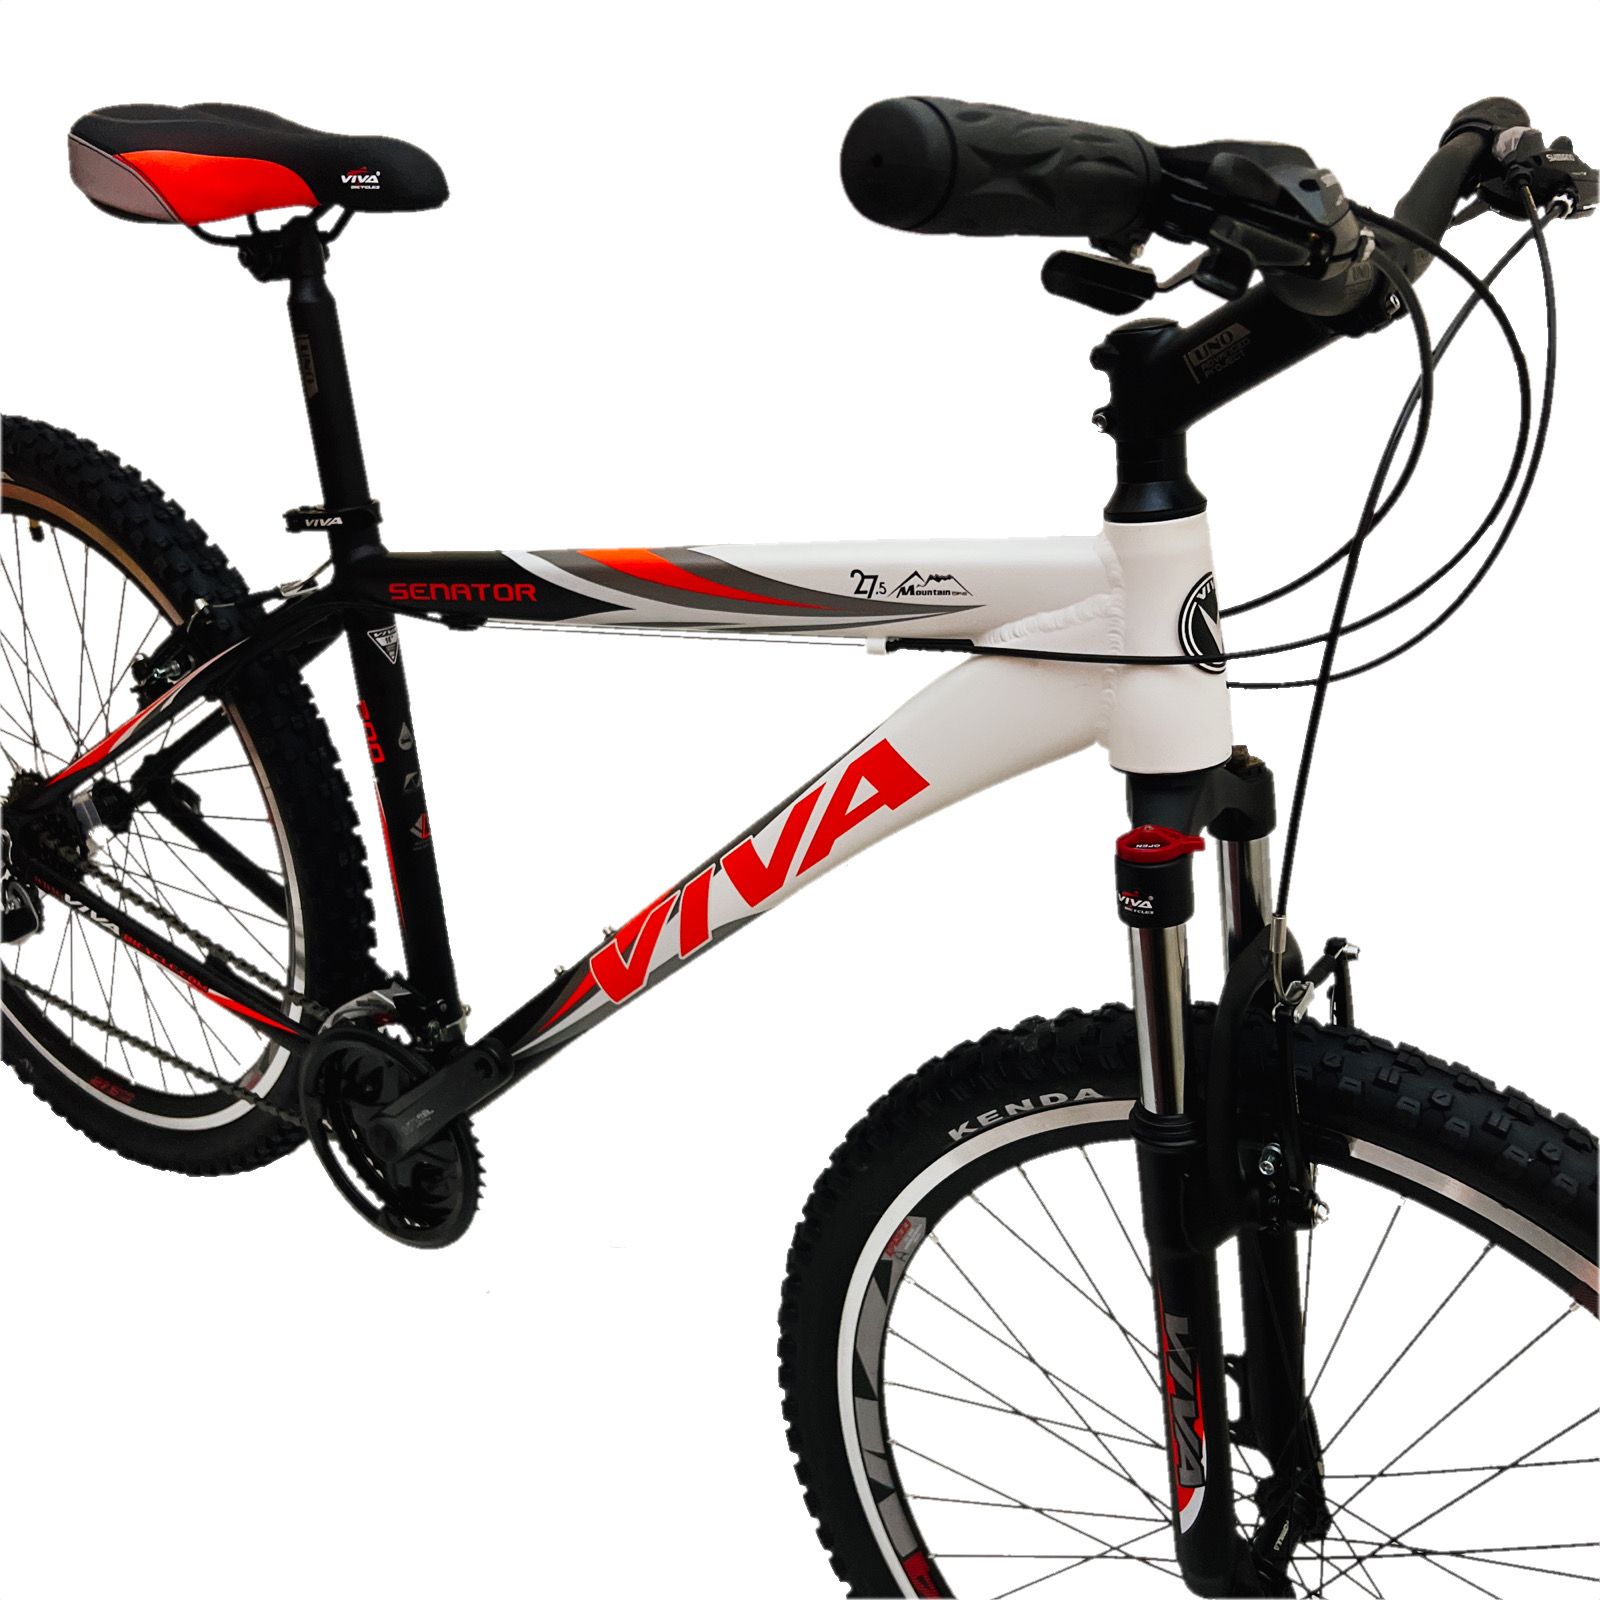 دوچرخه کوهستان ویوا مدل SENATOR سایز 27.5 -  - 8